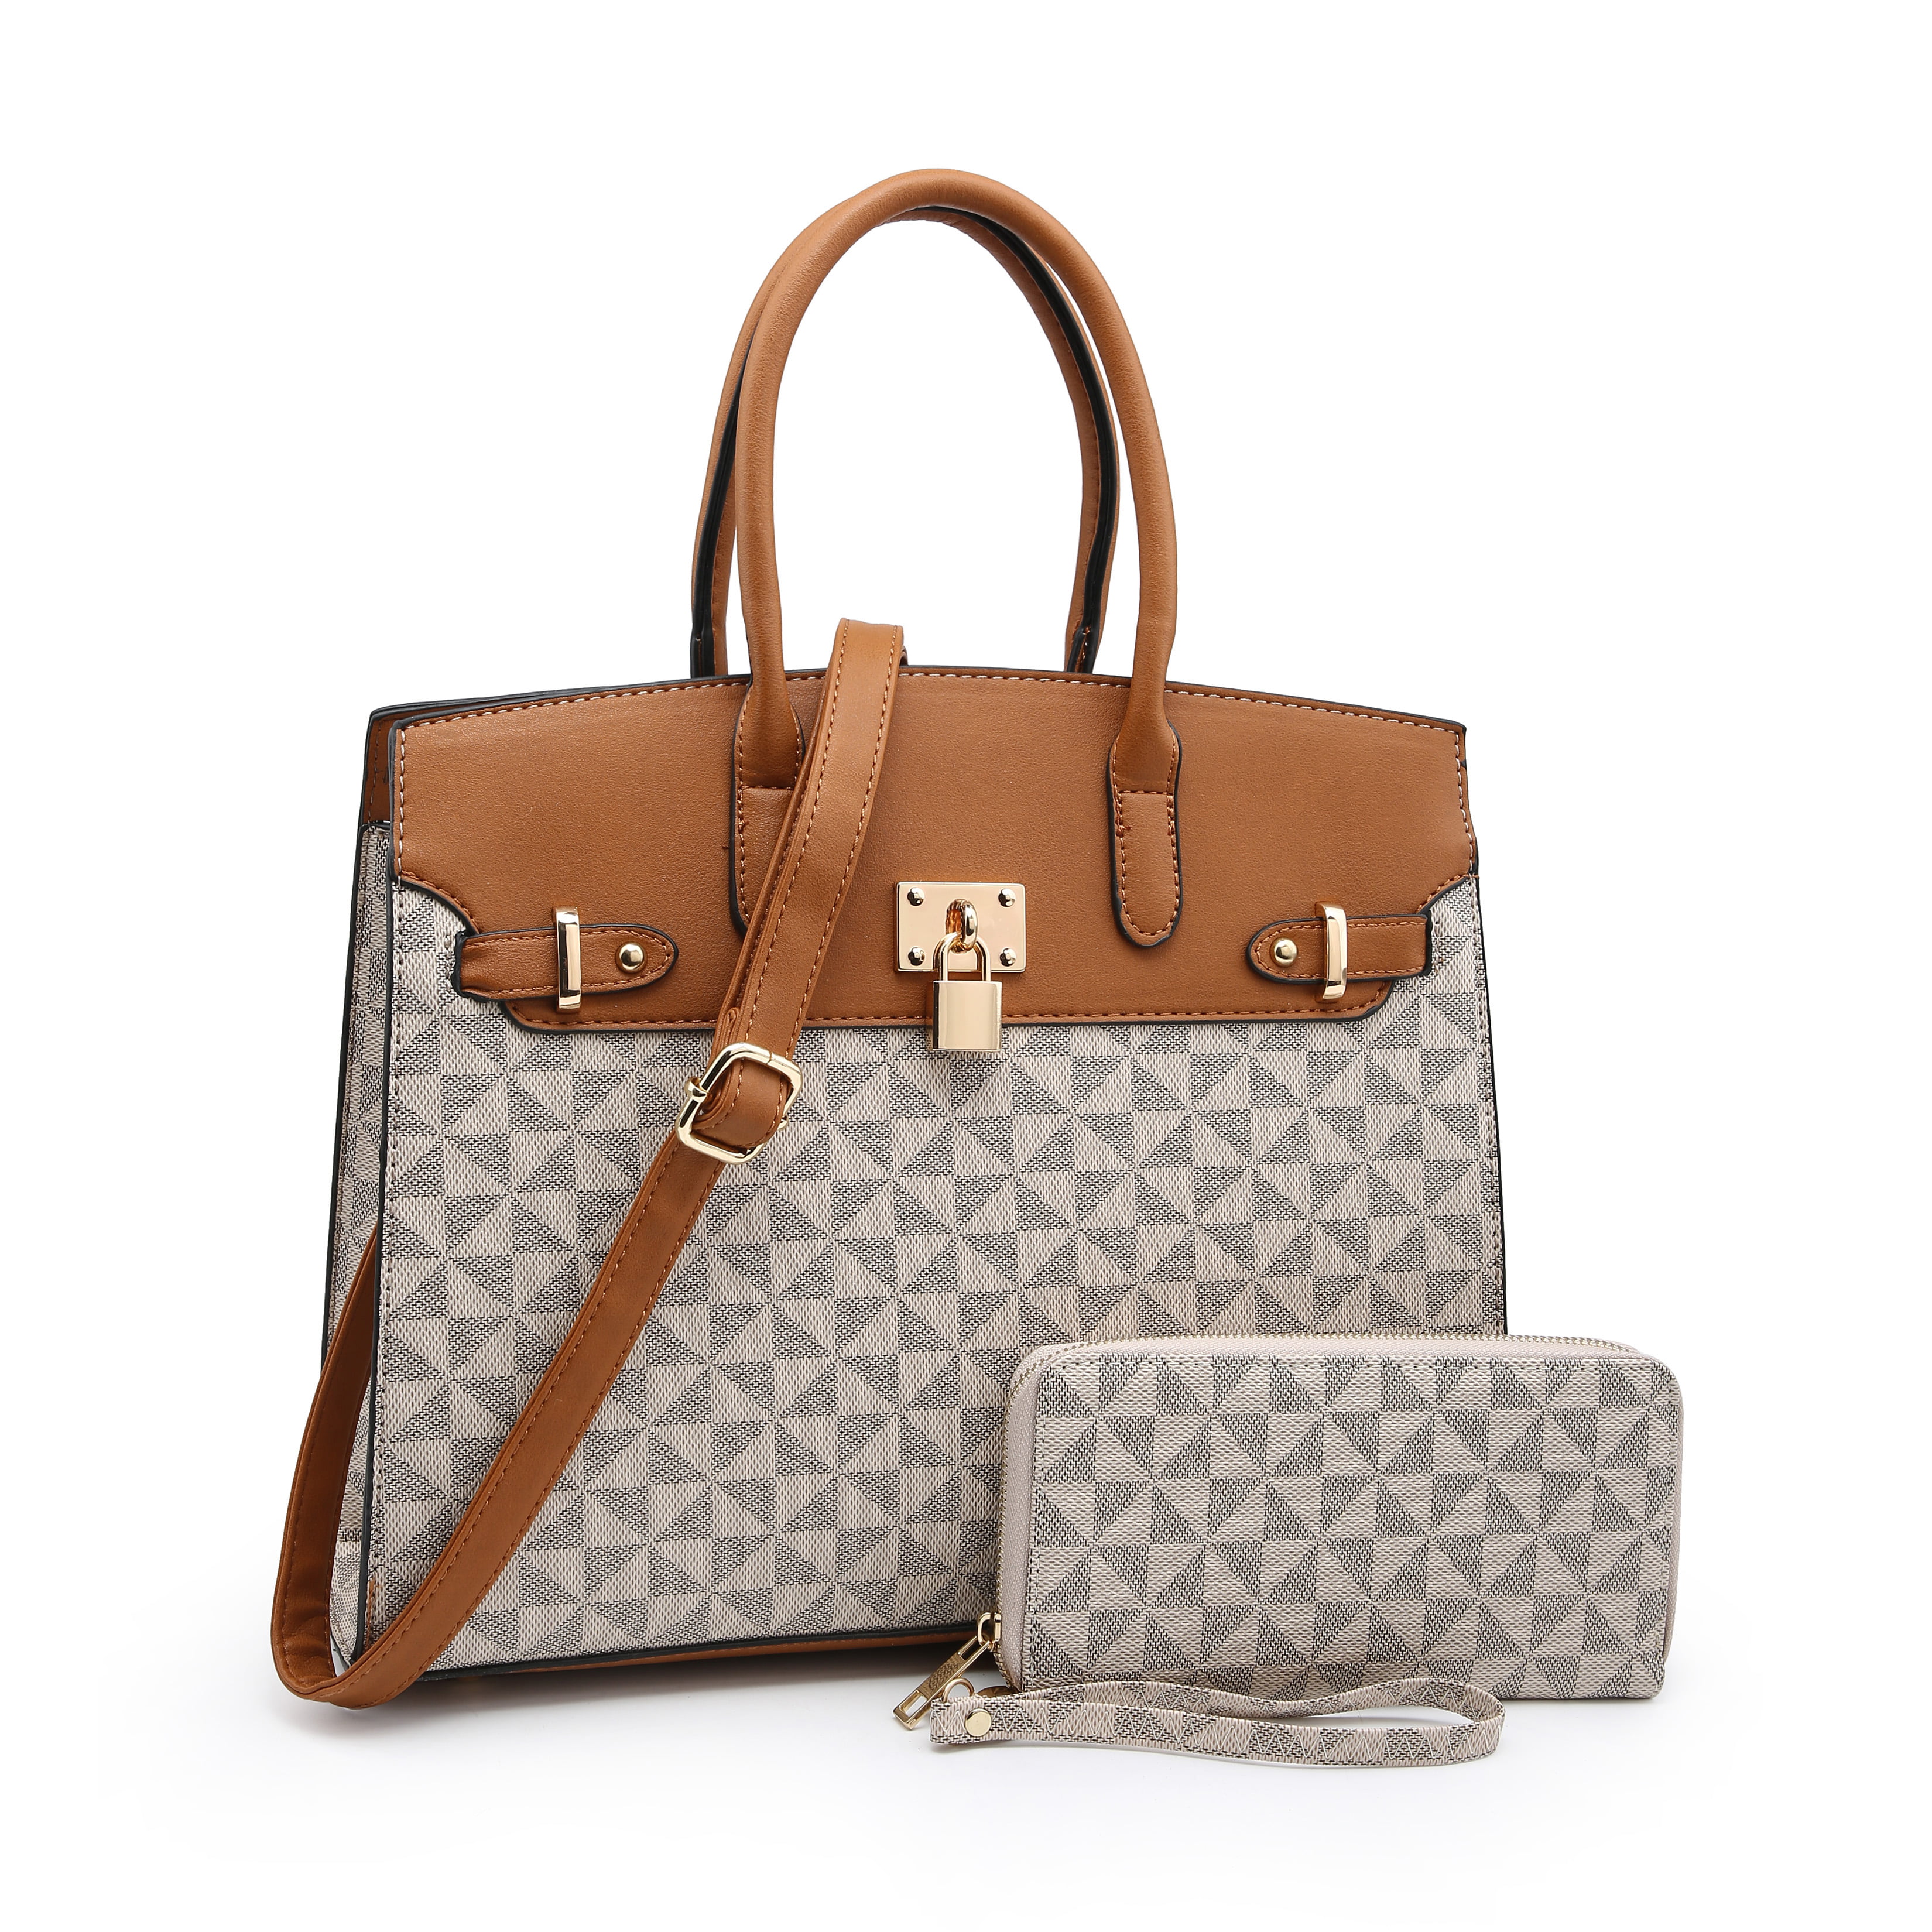 Poppy - POPPY Handbags Gift Set 2 in 1 Women's Top Handle Satchel Totes ...